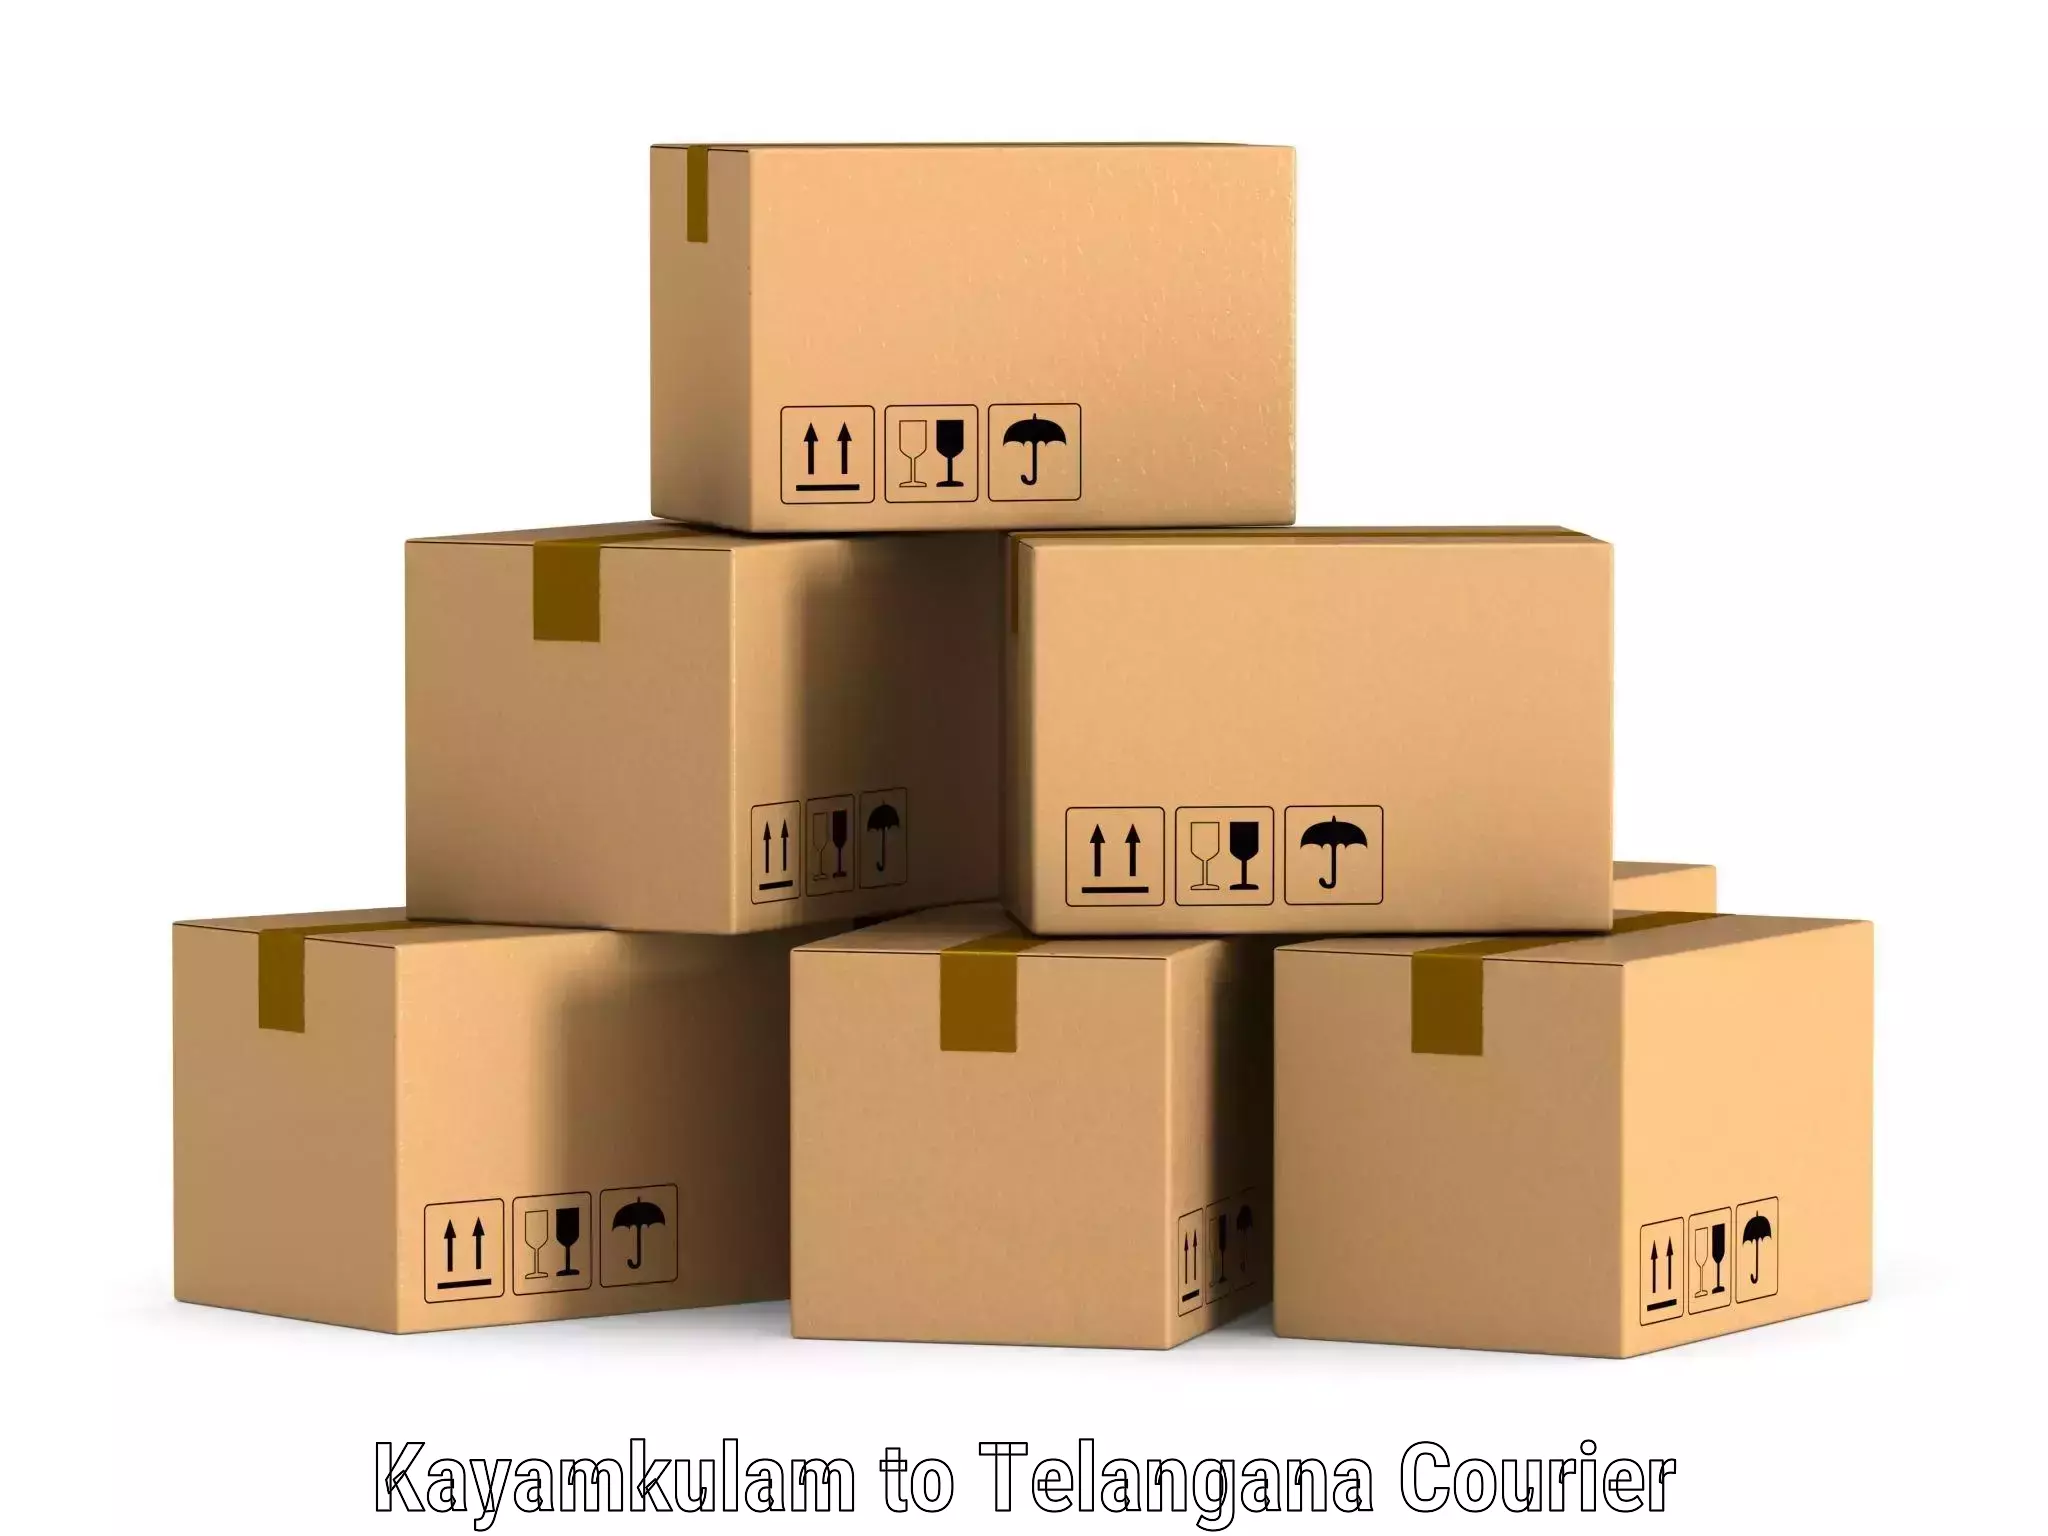 Tech-enabled shipping Kayamkulam to Tiryani